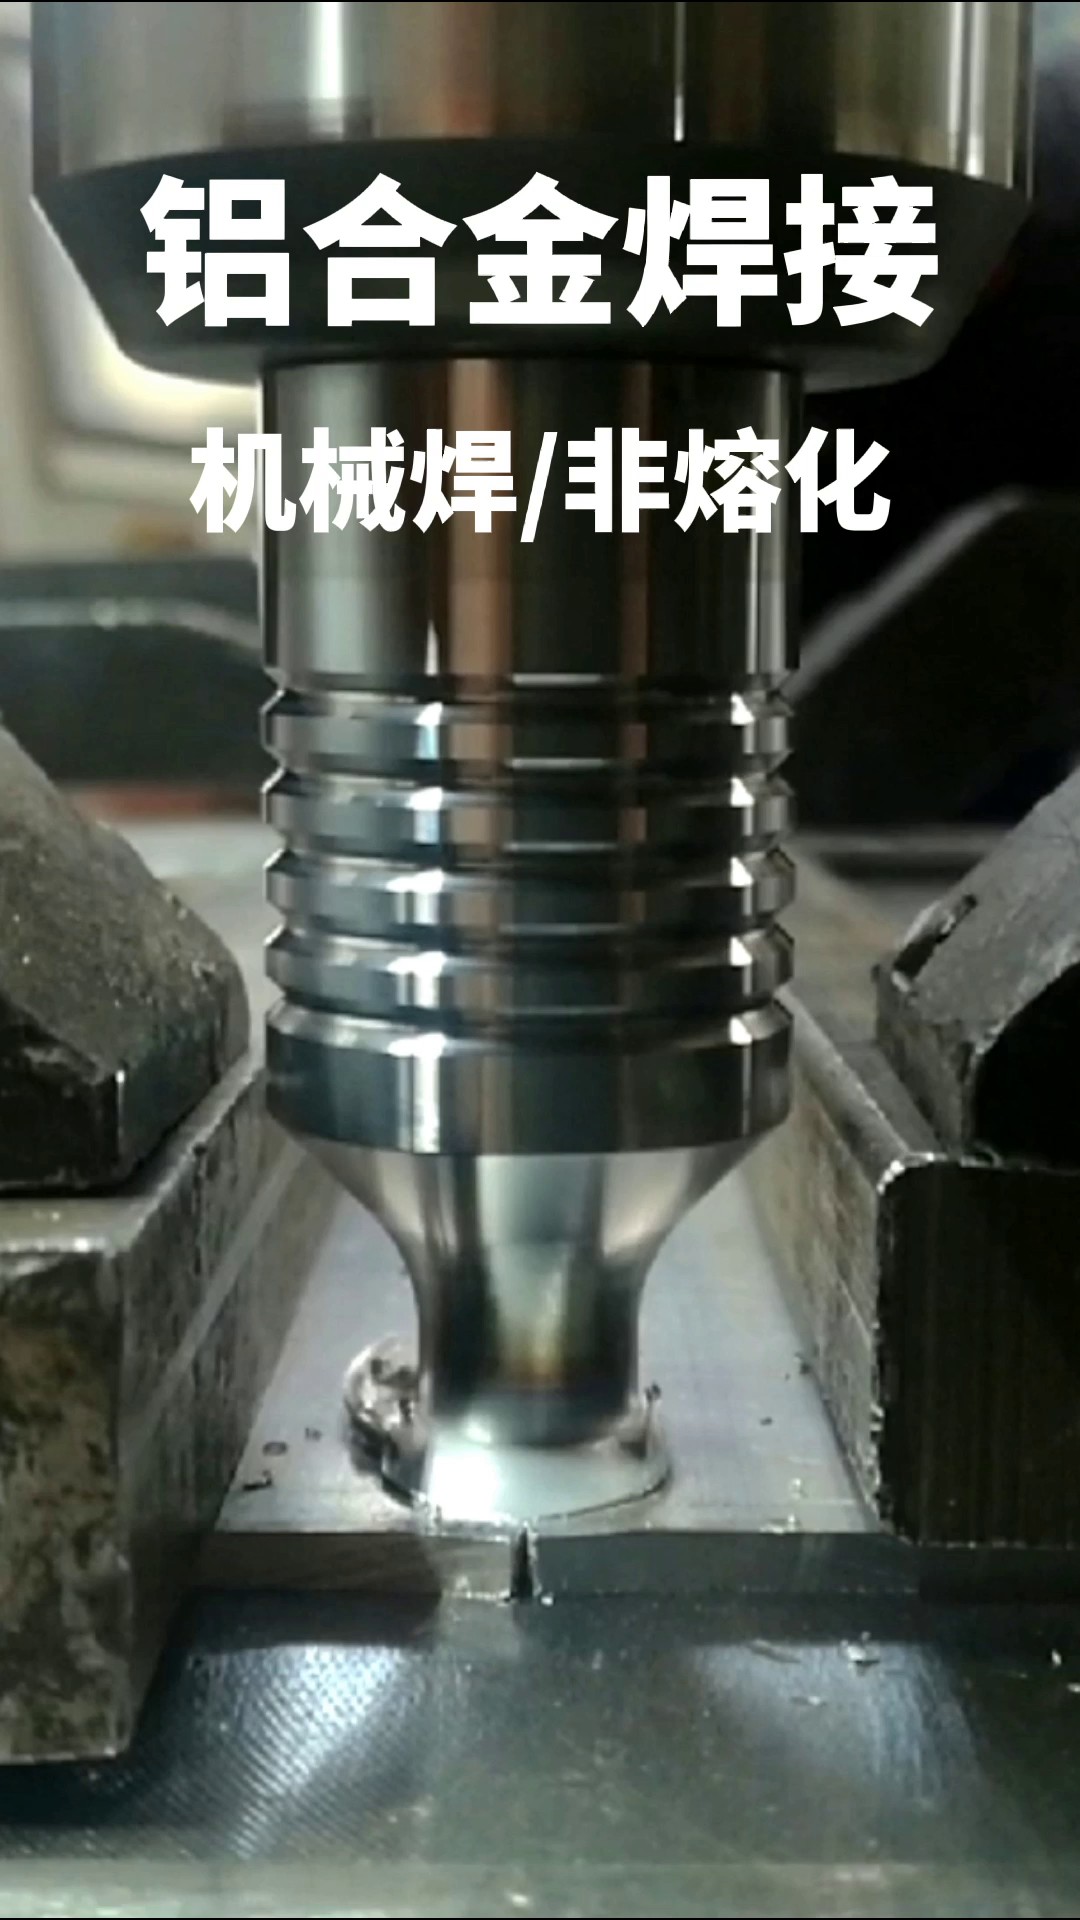 广东什么是搅拌摩擦焊,搅拌摩擦焊